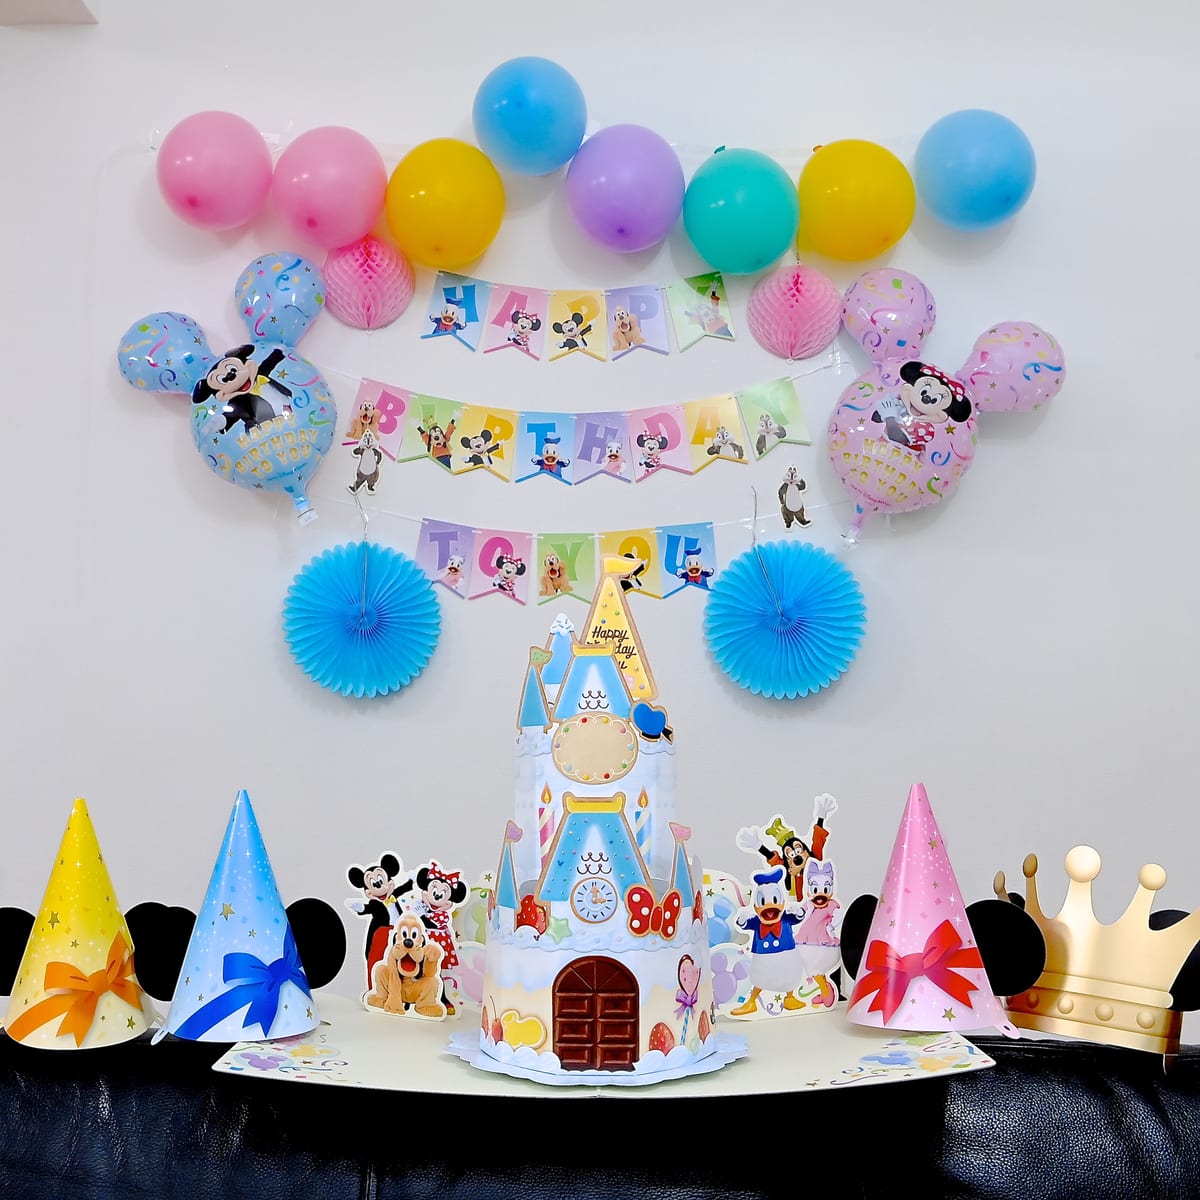 東京ディズニーリゾート「Disney Birthday @Home」デコレーションキット3